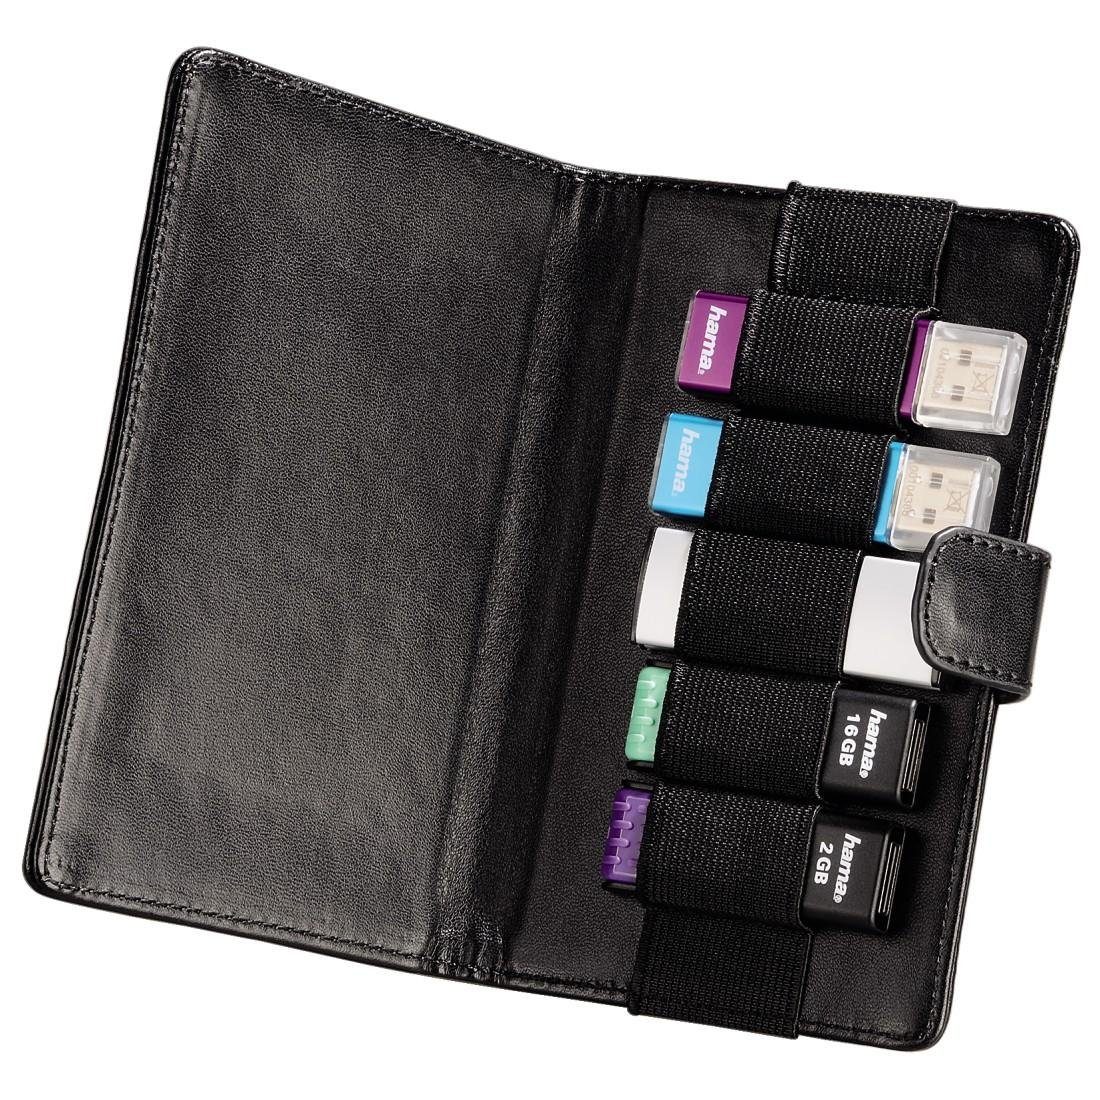 Case Fototasche Hama Schwarz "Vegas" 5 USB-Sticks, für USB-Stick